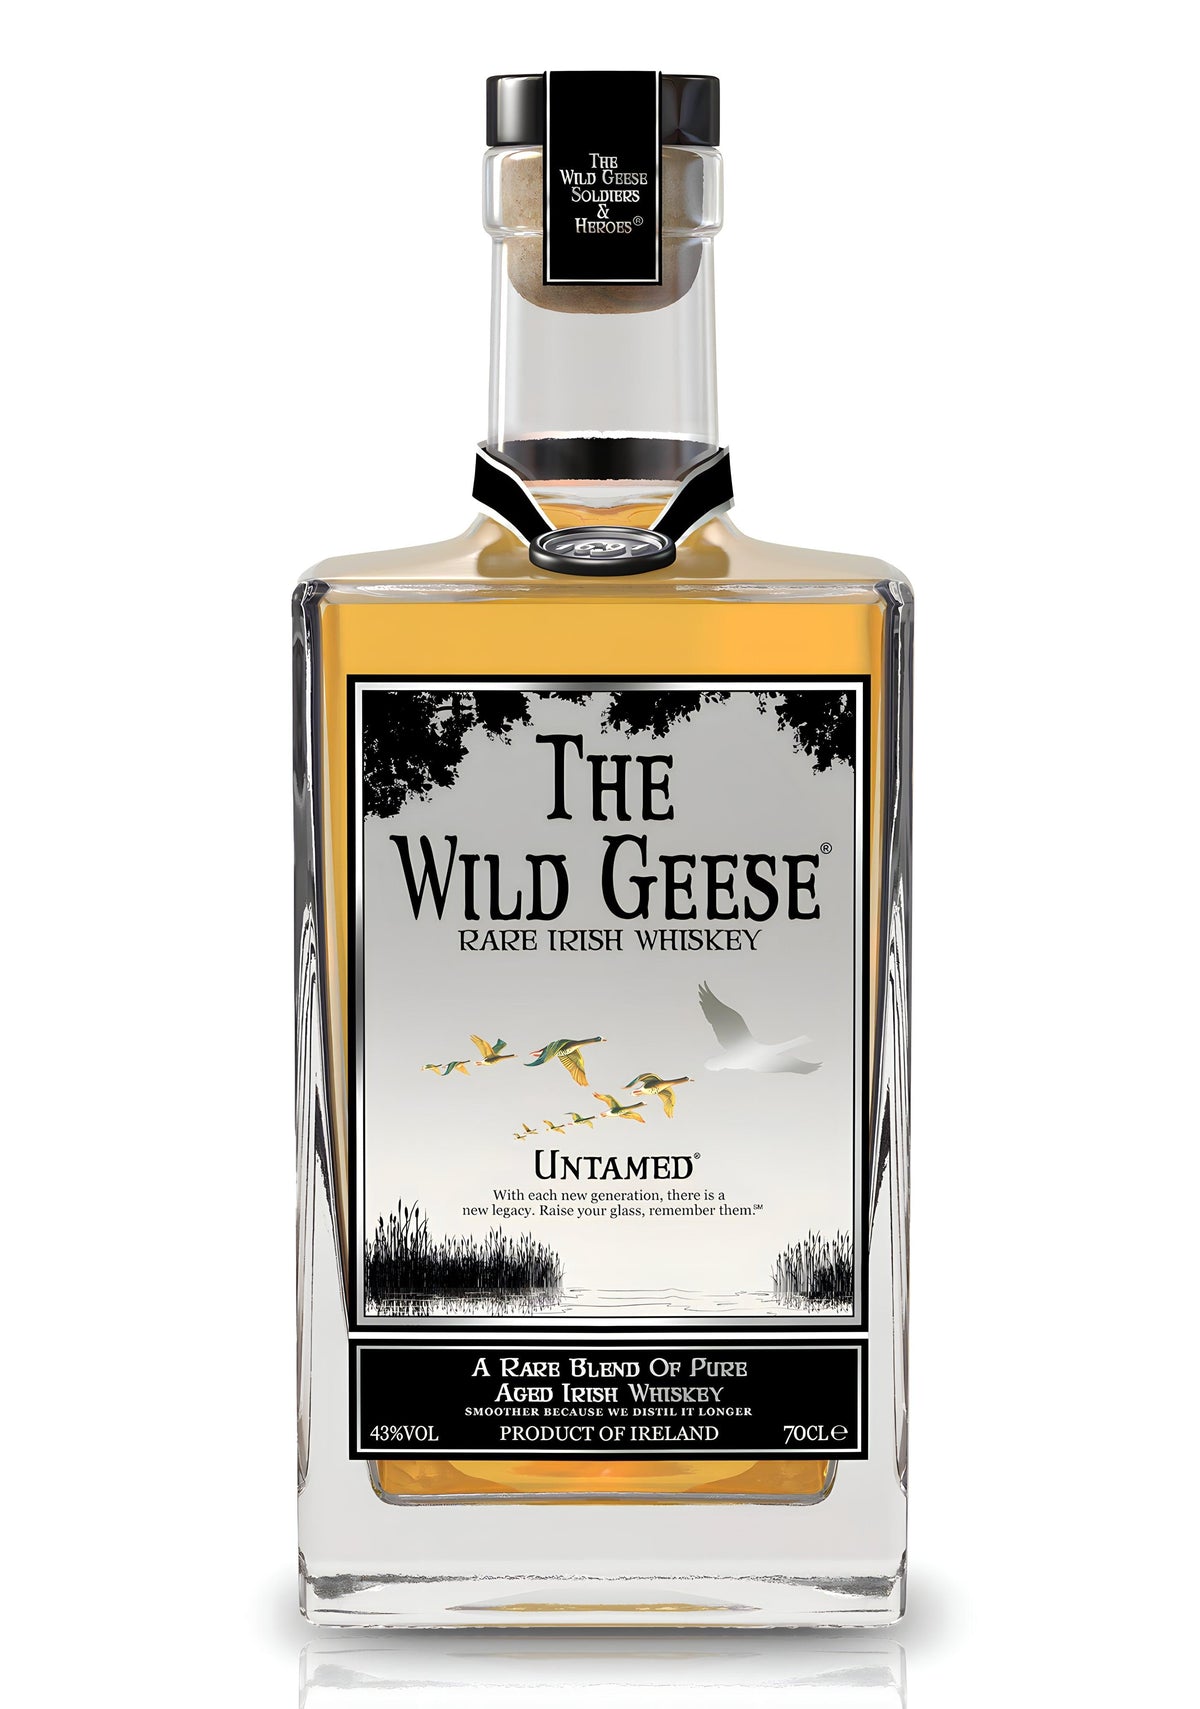 The Wild Geese Irish Whiskey Rare Irish